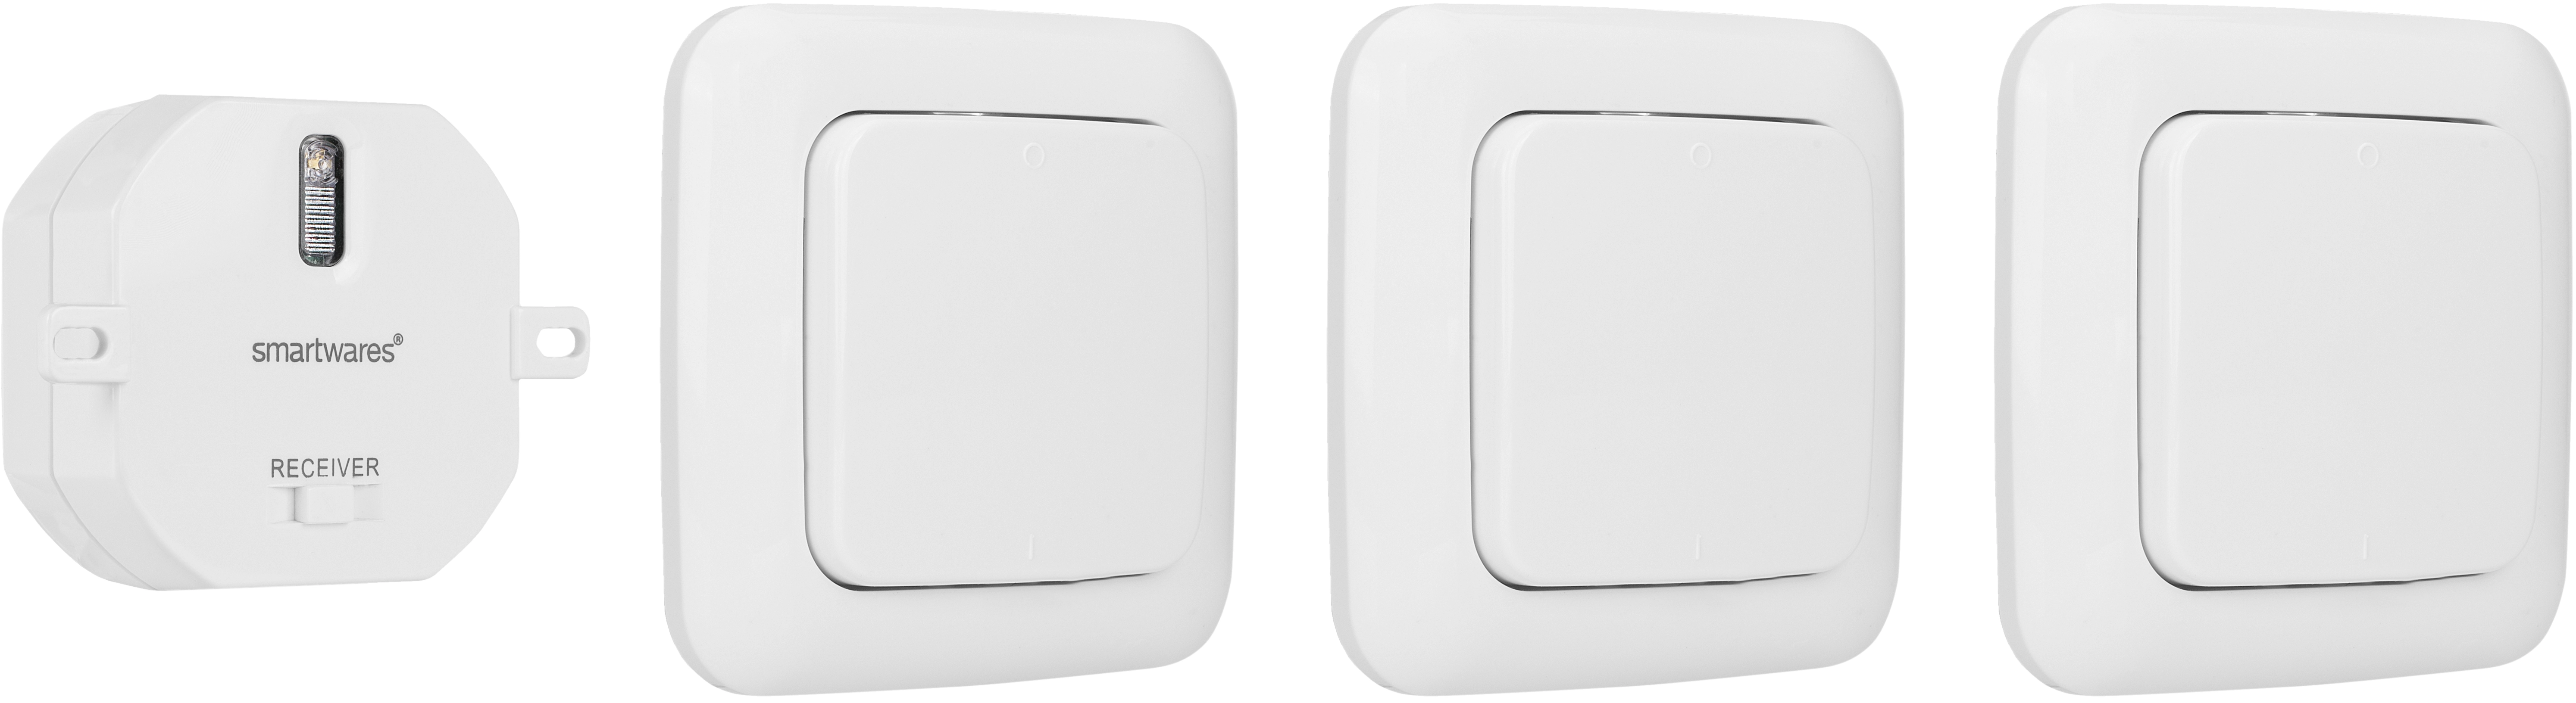 1.000W Funk-Wandschaltern kaufen OBI bei Smartwares 3 mit Einbauschalter-Set Weiß